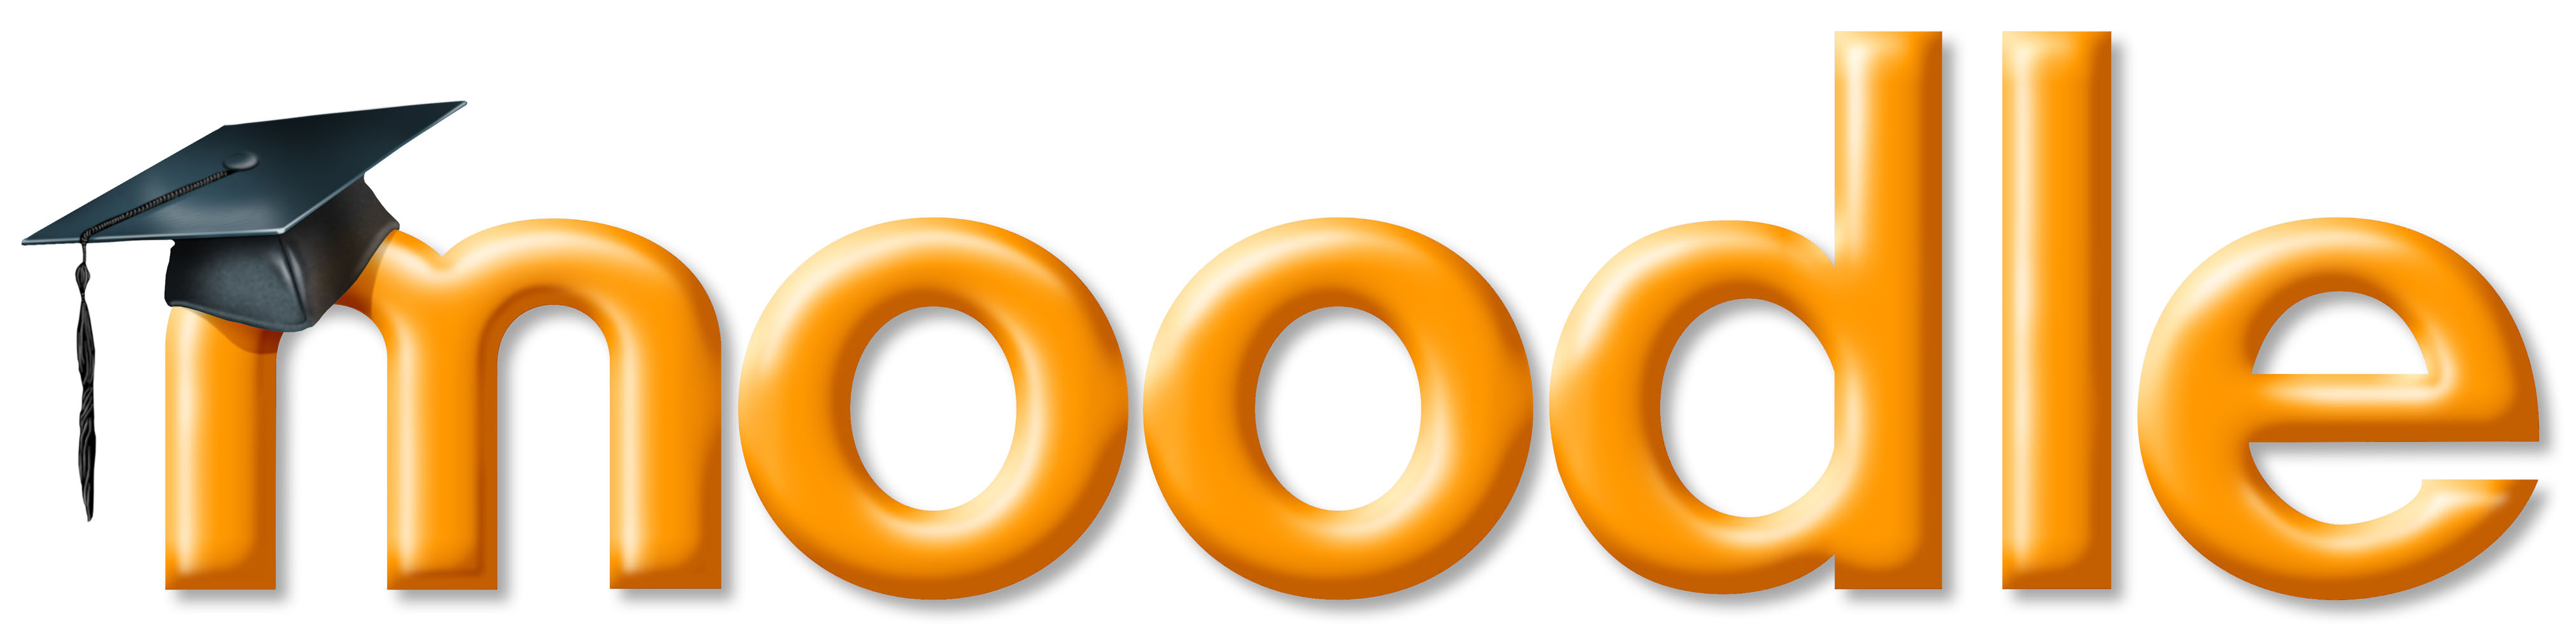 Moodle-logo-large.jpg